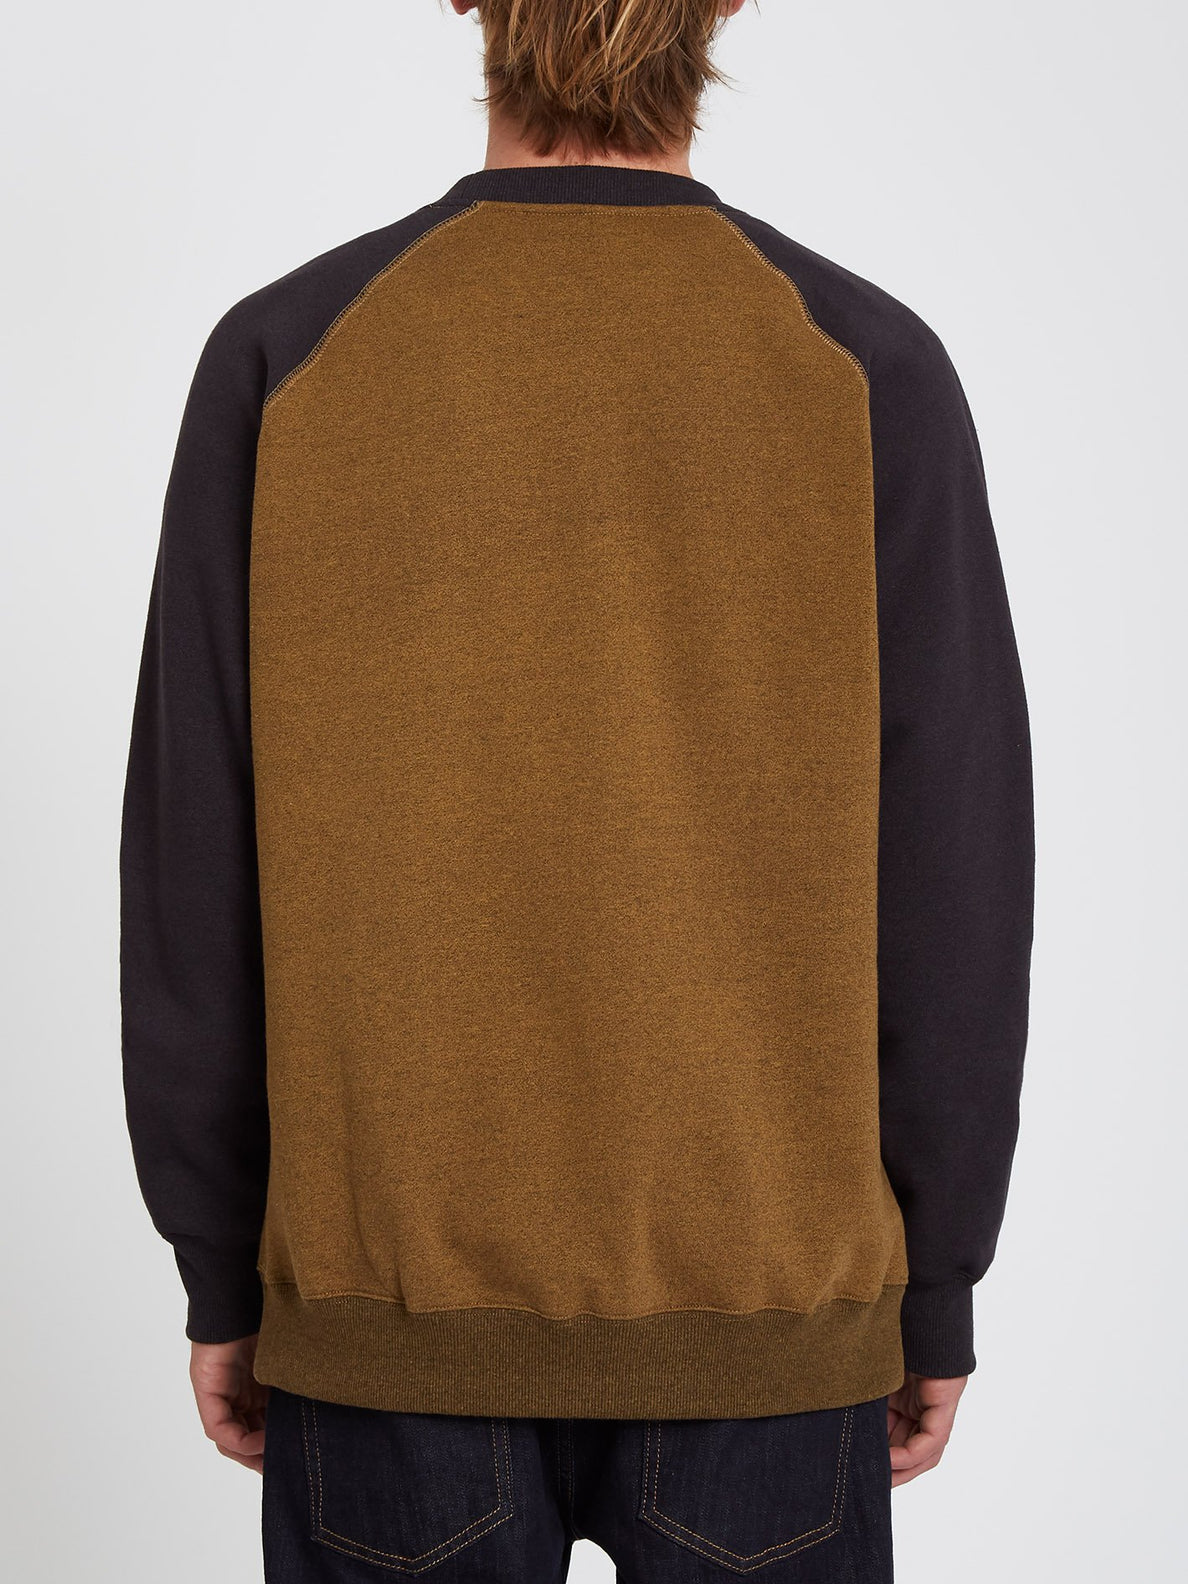 Homak Sweatshirt - GOLDEN BROWN (A4632112_GBN) [B]